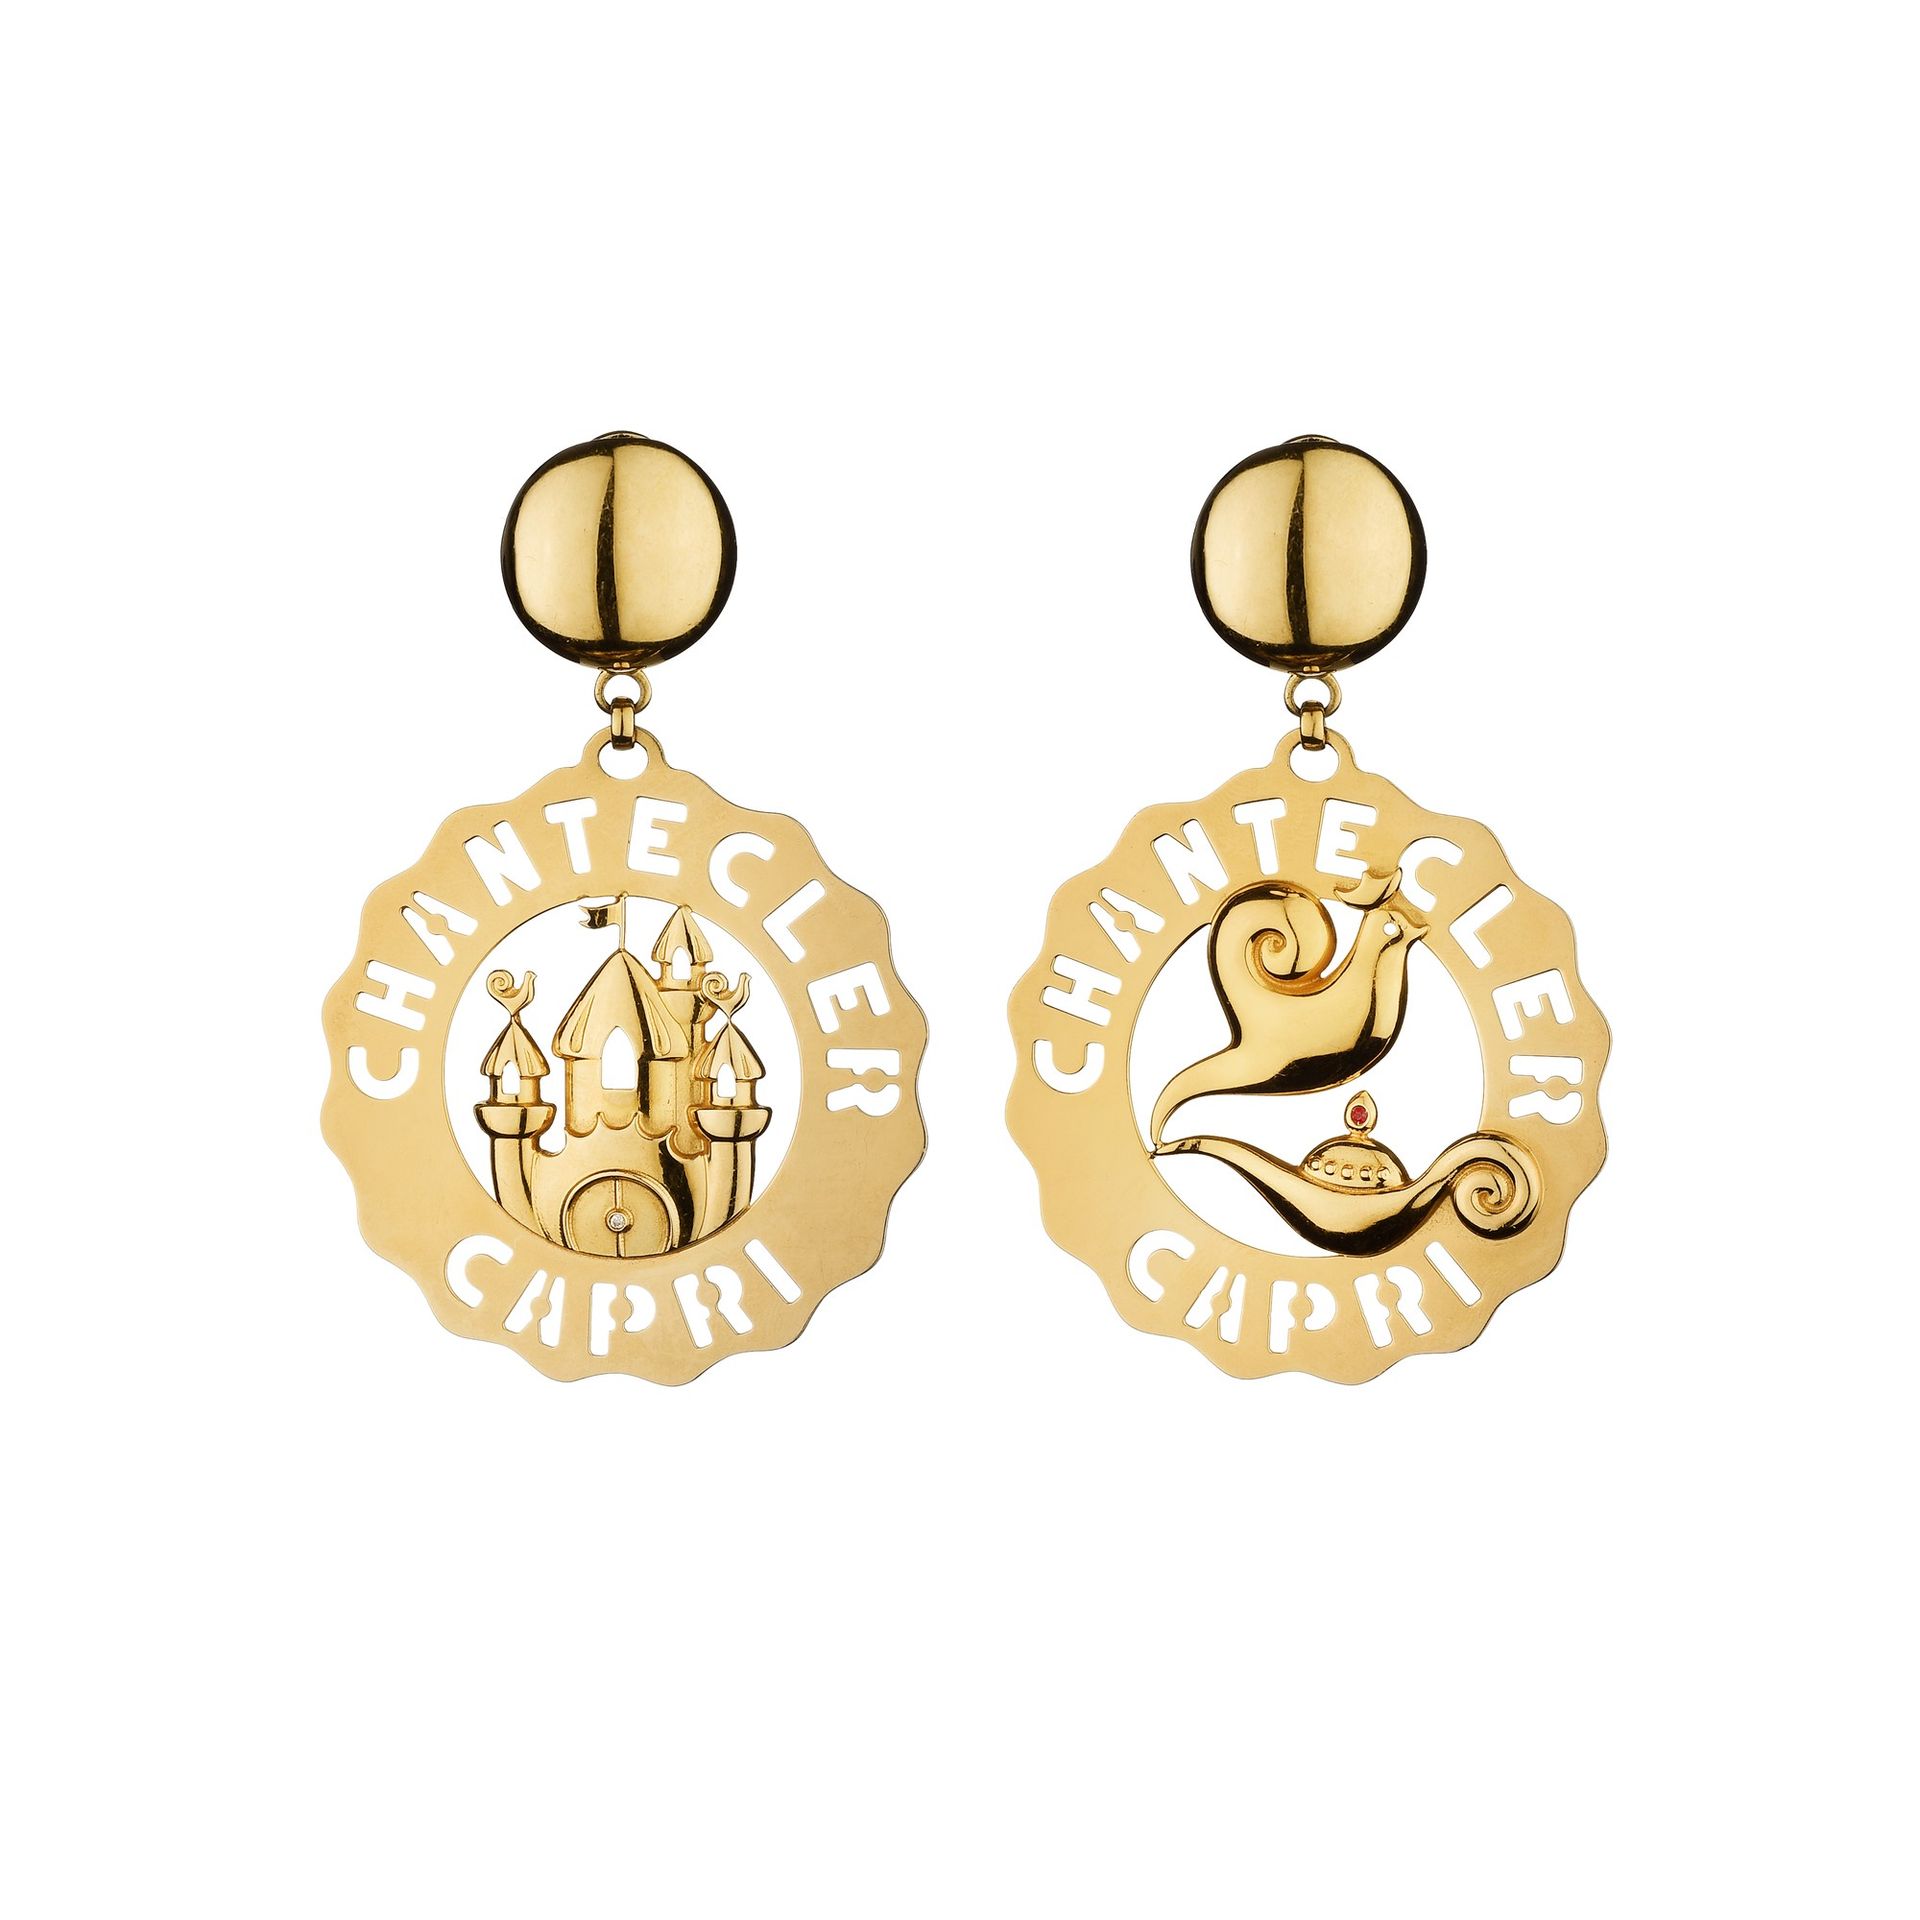 CHANTECLER Orecchini pendenti Logo firmati Chantecler in oro giallo 18 carati.

&hellip;